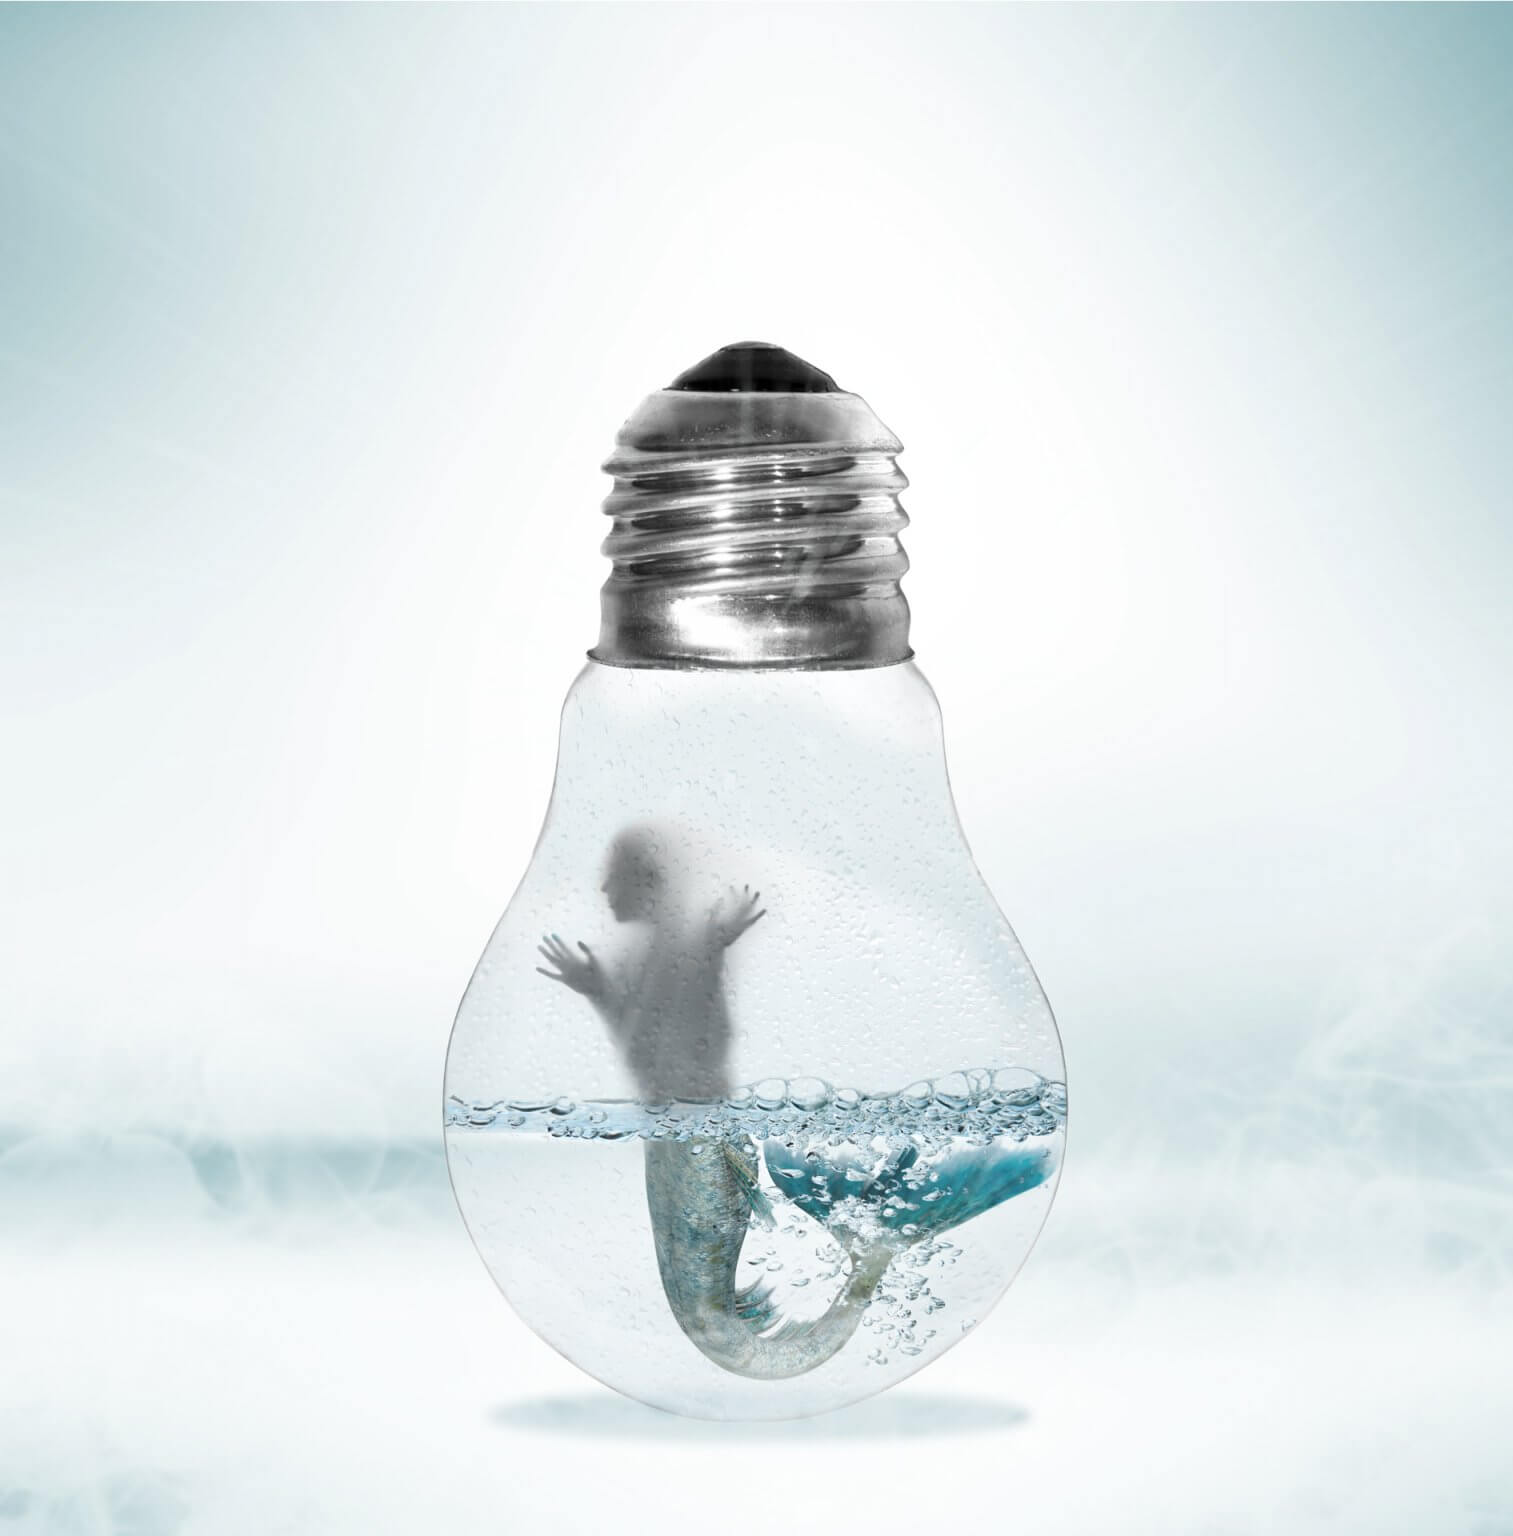 Kreative Bildbearbeitung Composing Artwork zeigt eine Meerjungfrau in einer Glühbirne gefangen.